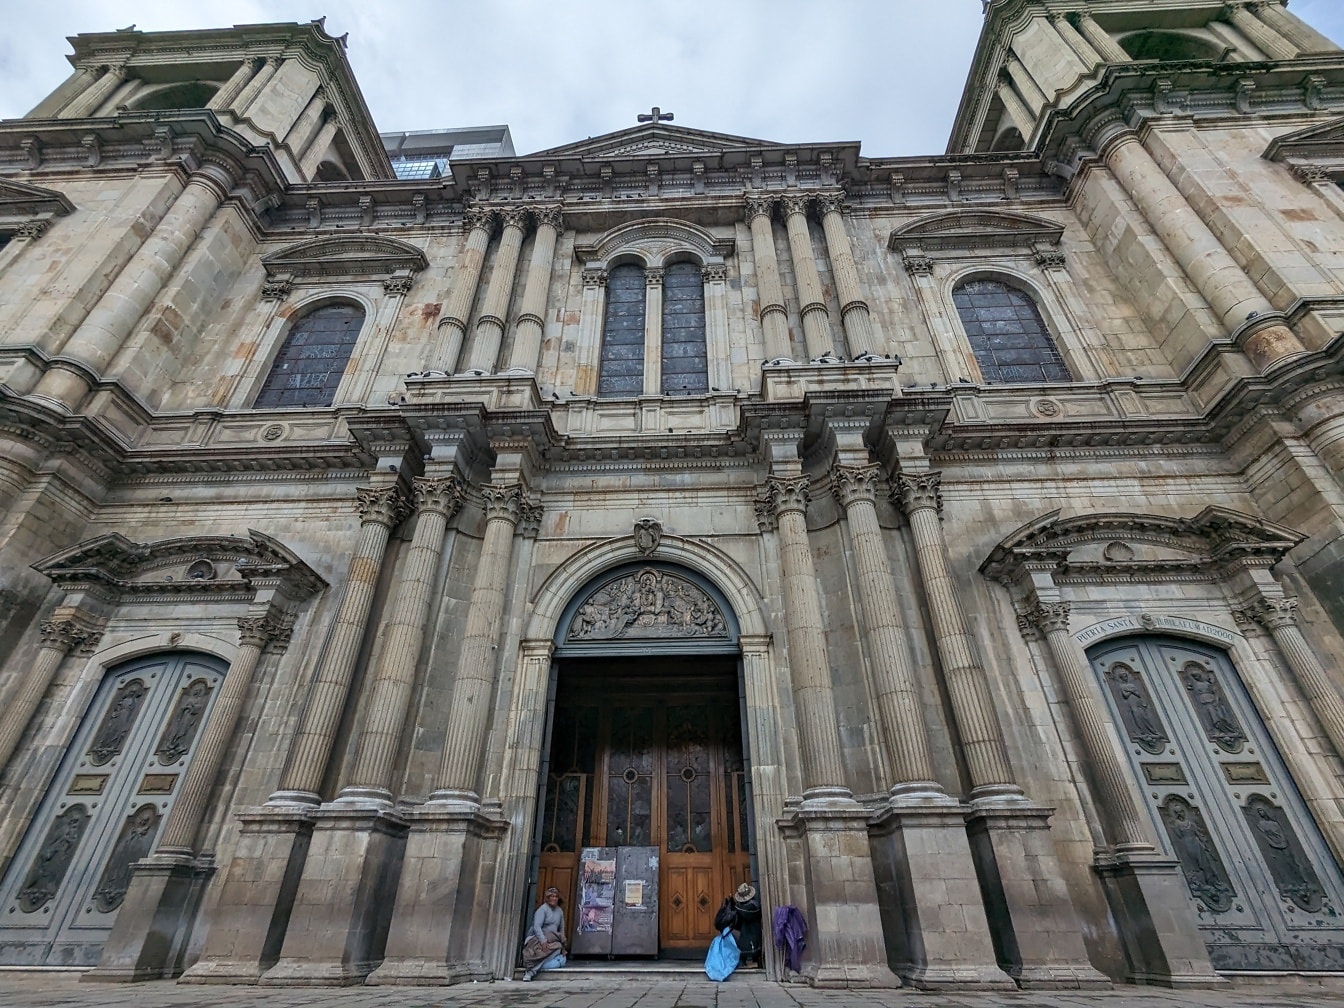 ラパス市のムリーリョ広場にある大聖堂で、正面玄関に乞食が立っている